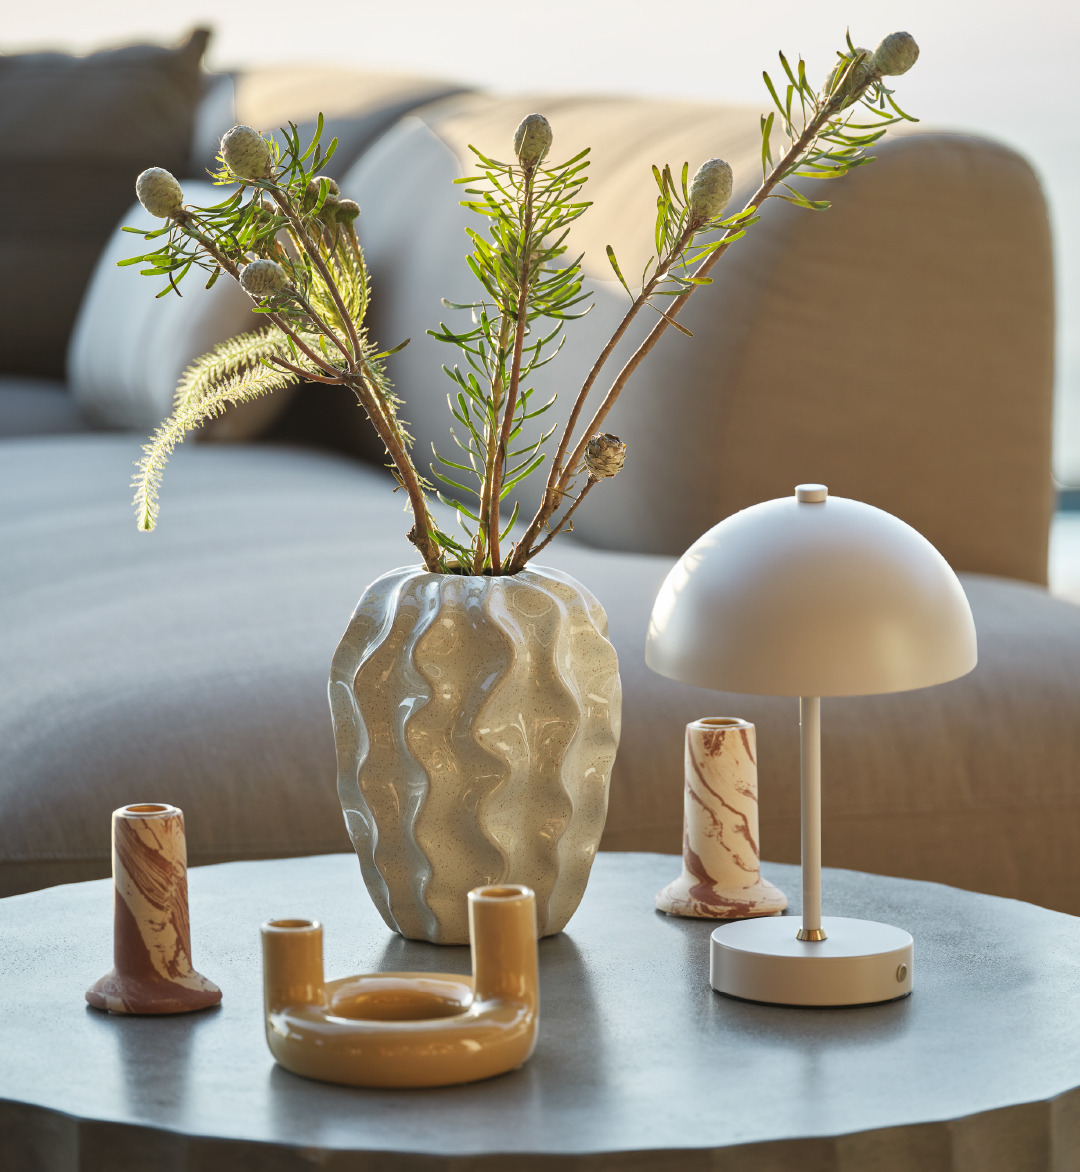 Portacndele, vasi e lampada in varie tonalità di beige su un tavolo lounge grigio